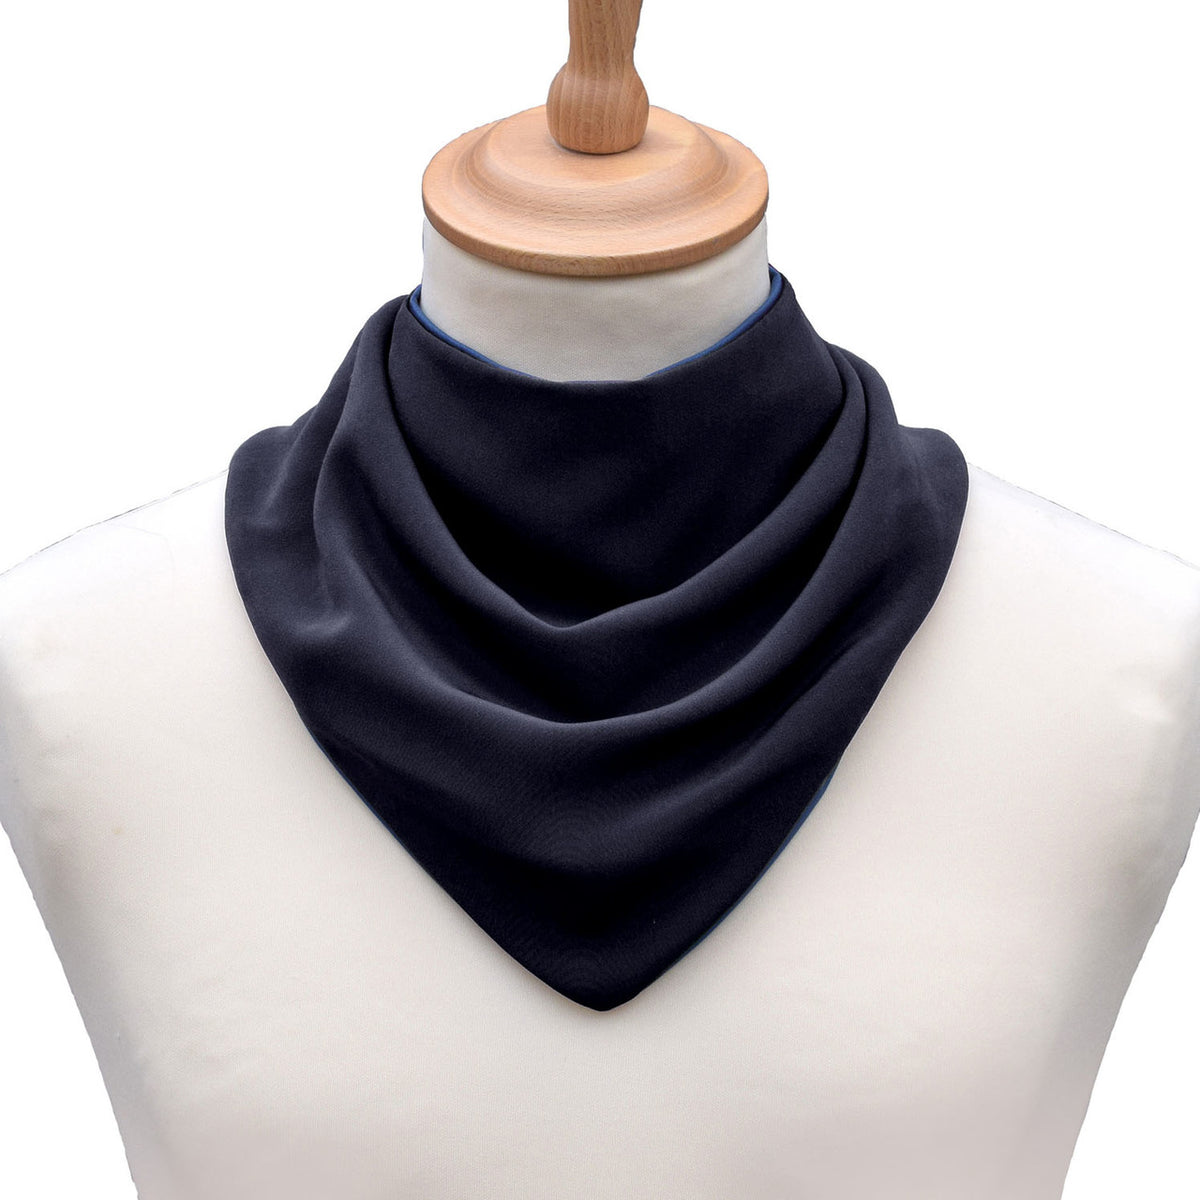 Neckerchief style dribble bib - Charcoal Black | Health Care | Care Designs